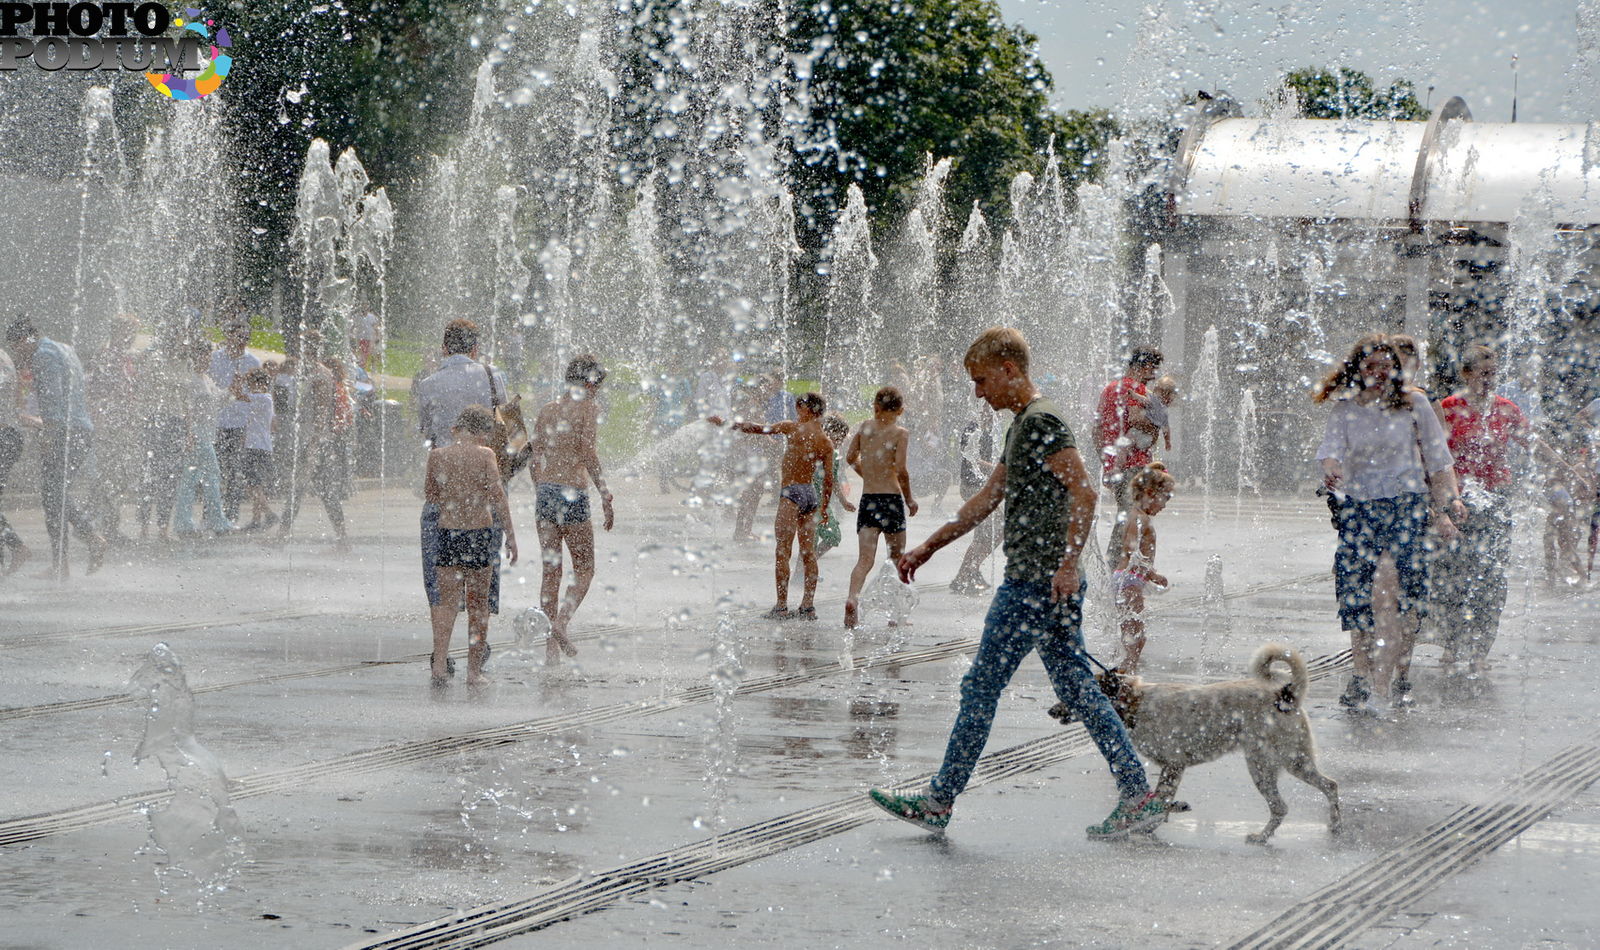 Было лето 2010. Аномальная жара в России 2010. Лето жара. Жара в городе. Аномальная жара 2010 года в России.